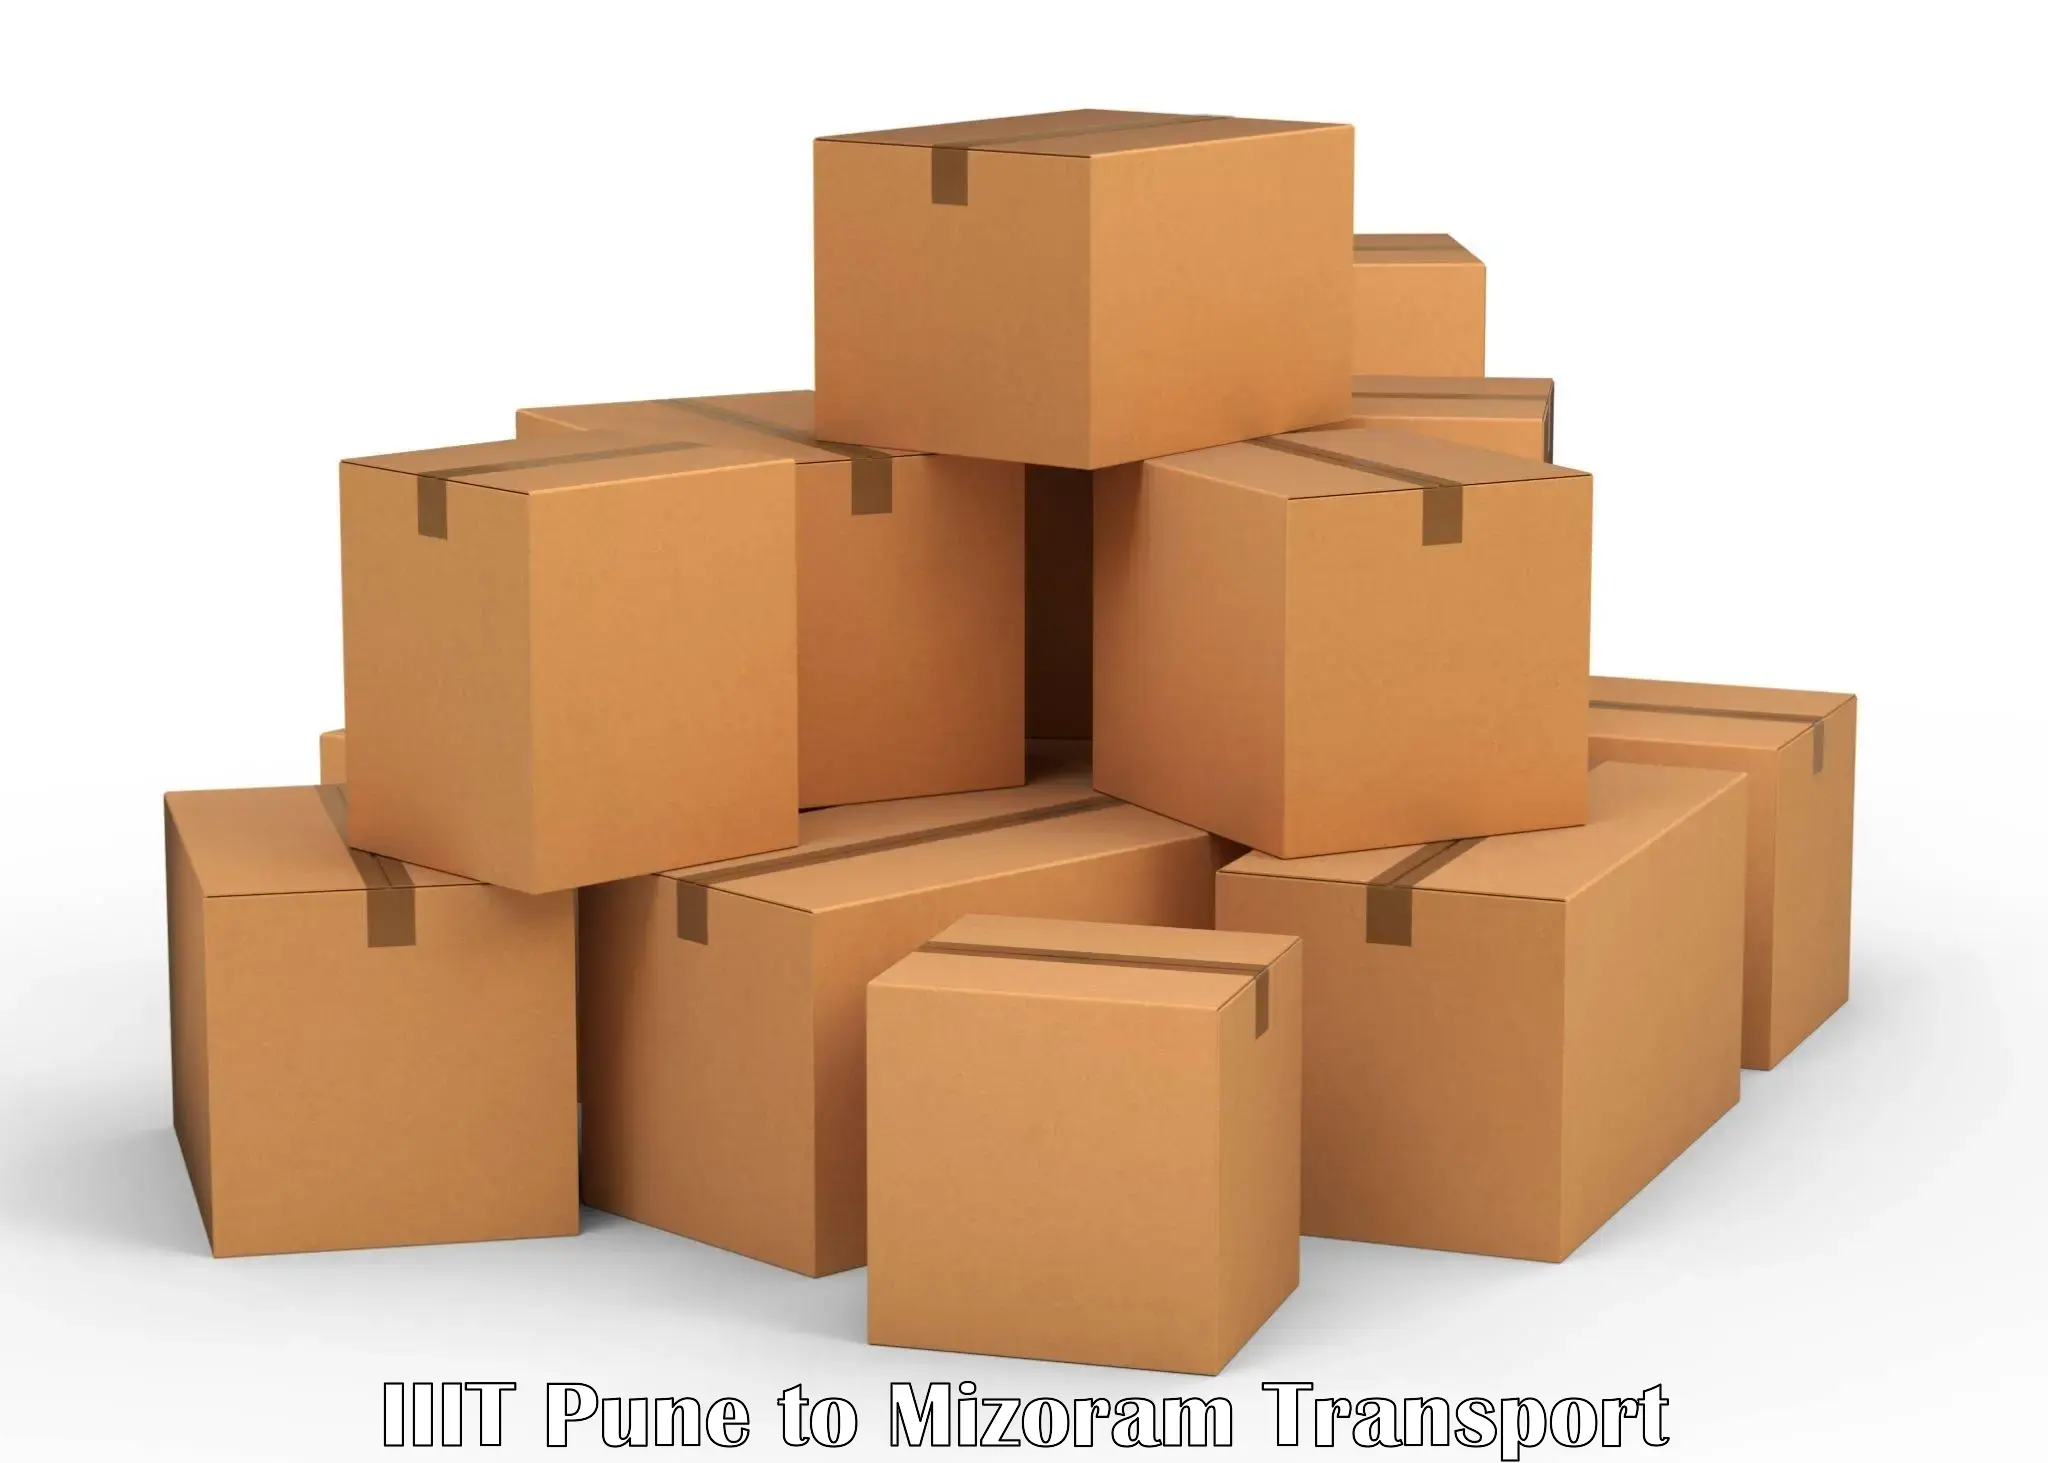 Goods delivery service IIIT Pune to Mizoram